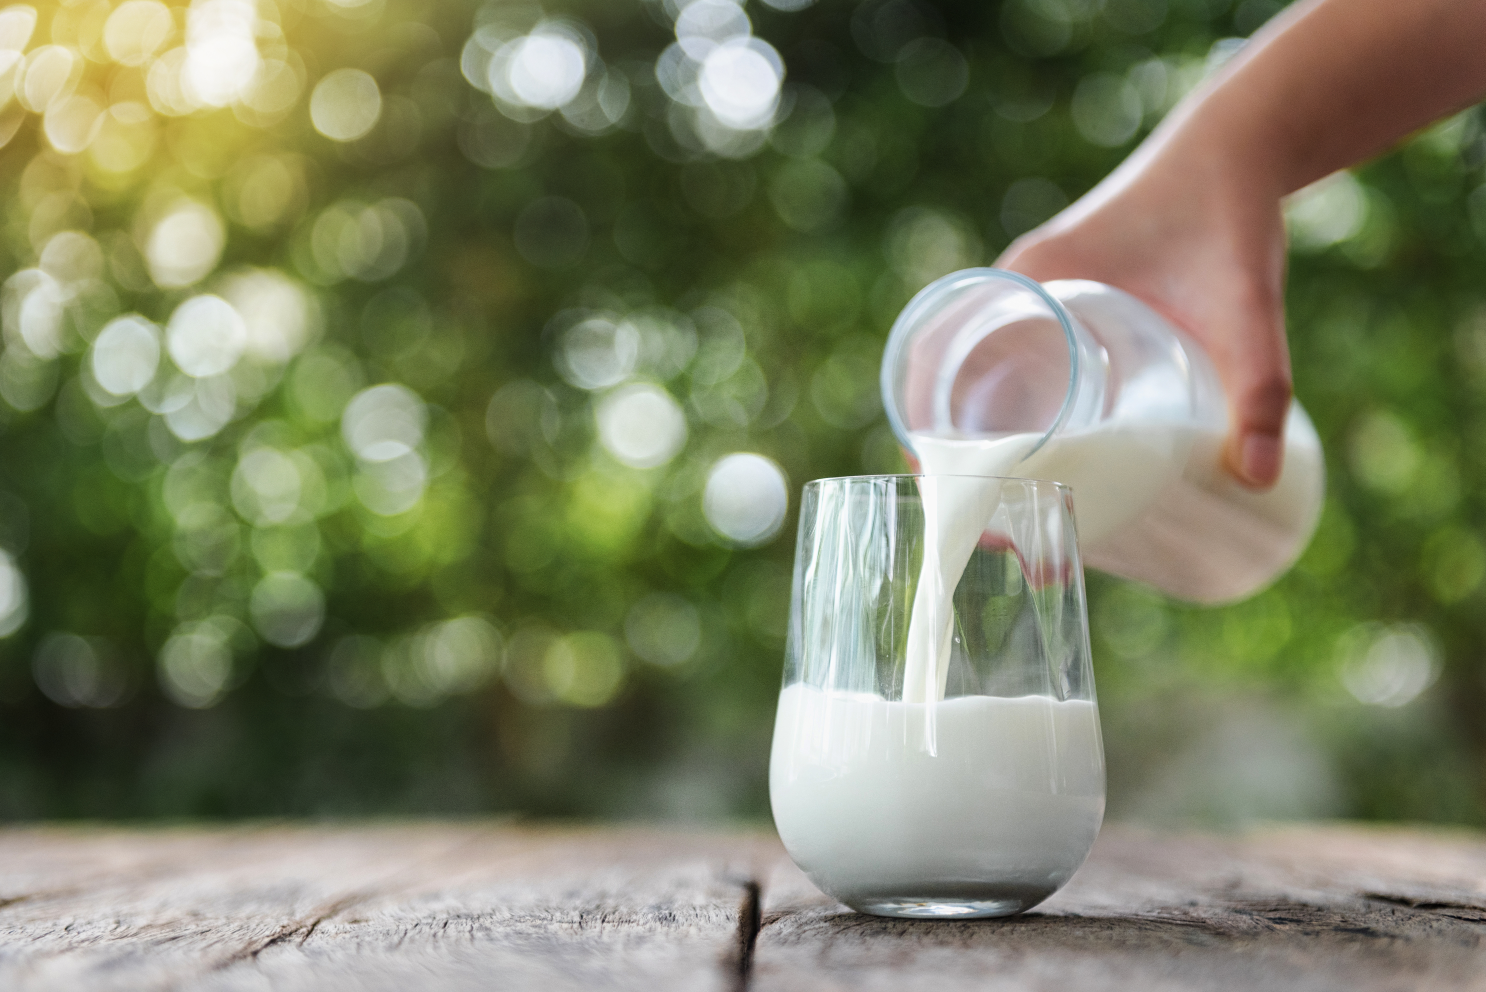 Milch enthÃ¤lt viele NÃ¤hrstoffe und eignet sich hervorragend, um Geranien zu dÃ¼ngen.